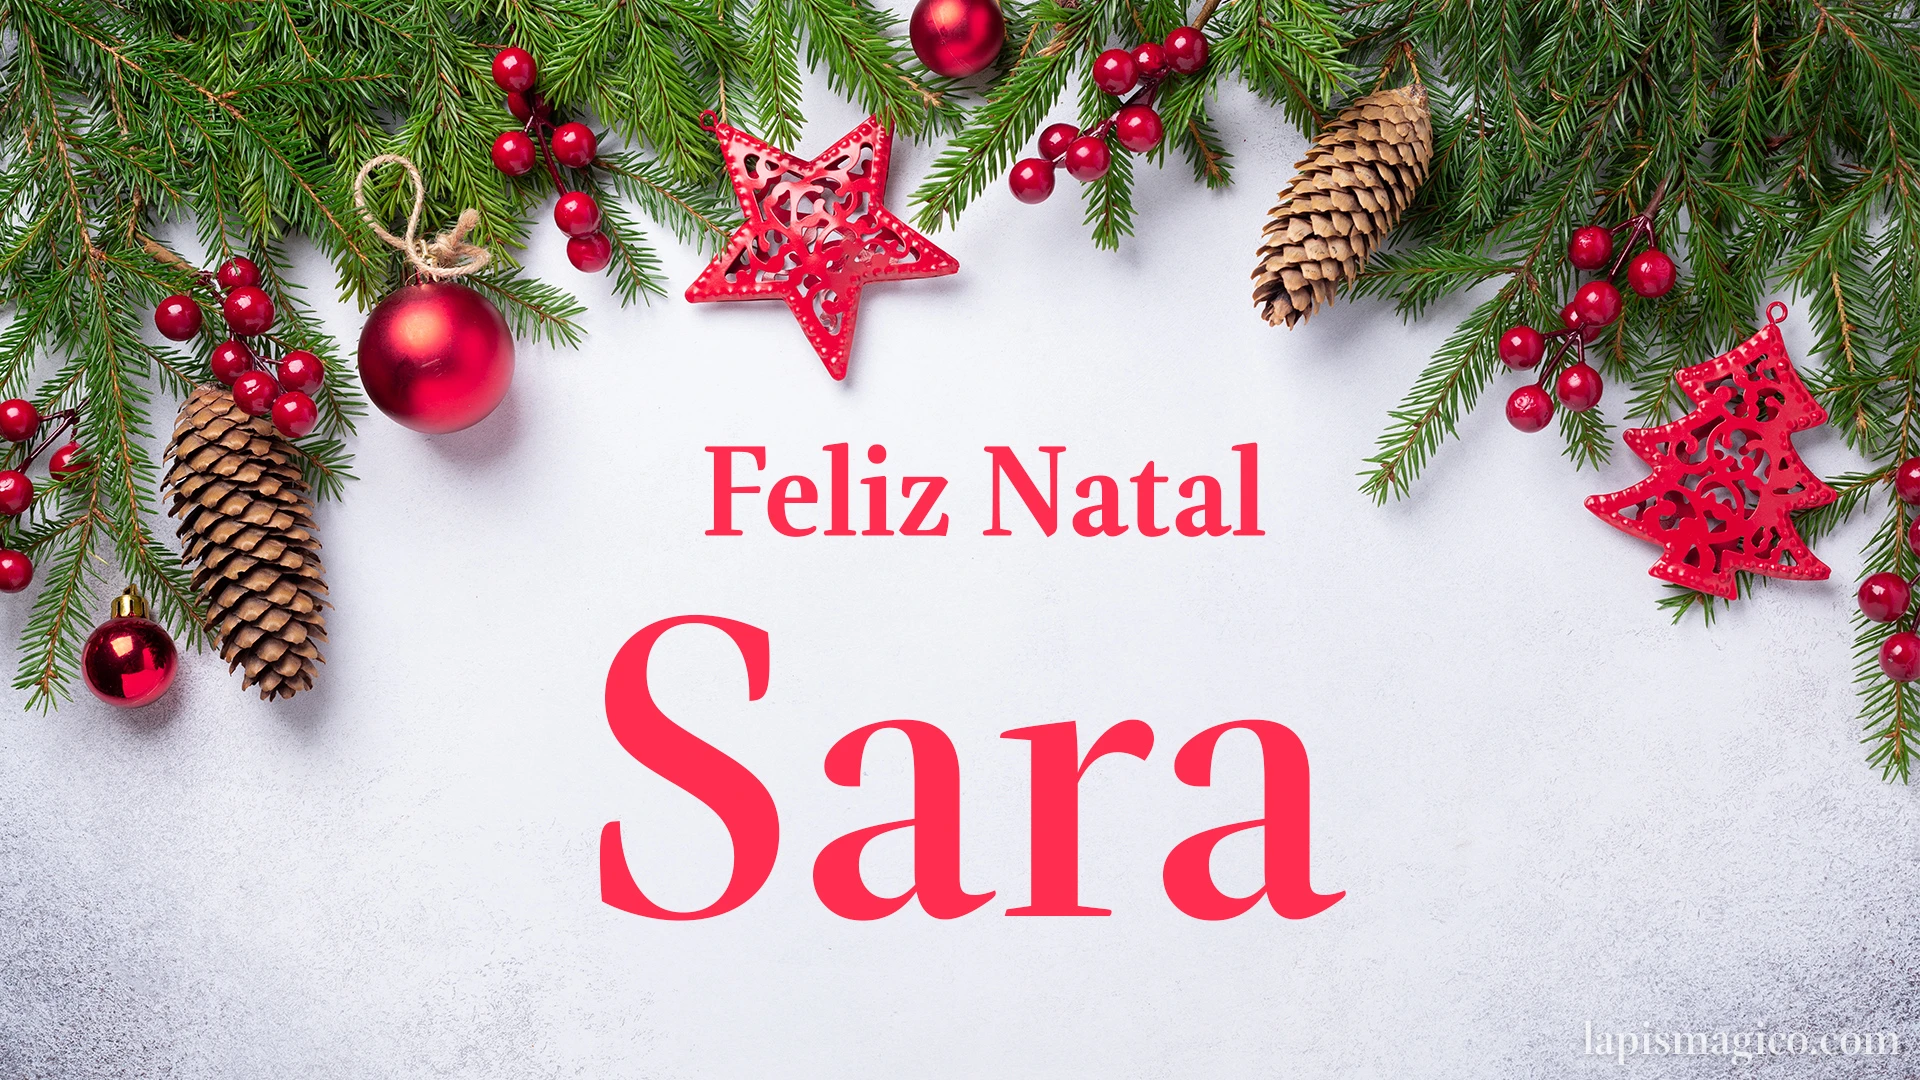 Oh Sara, cinco postais de Feliz Natal Postal com o teu nome